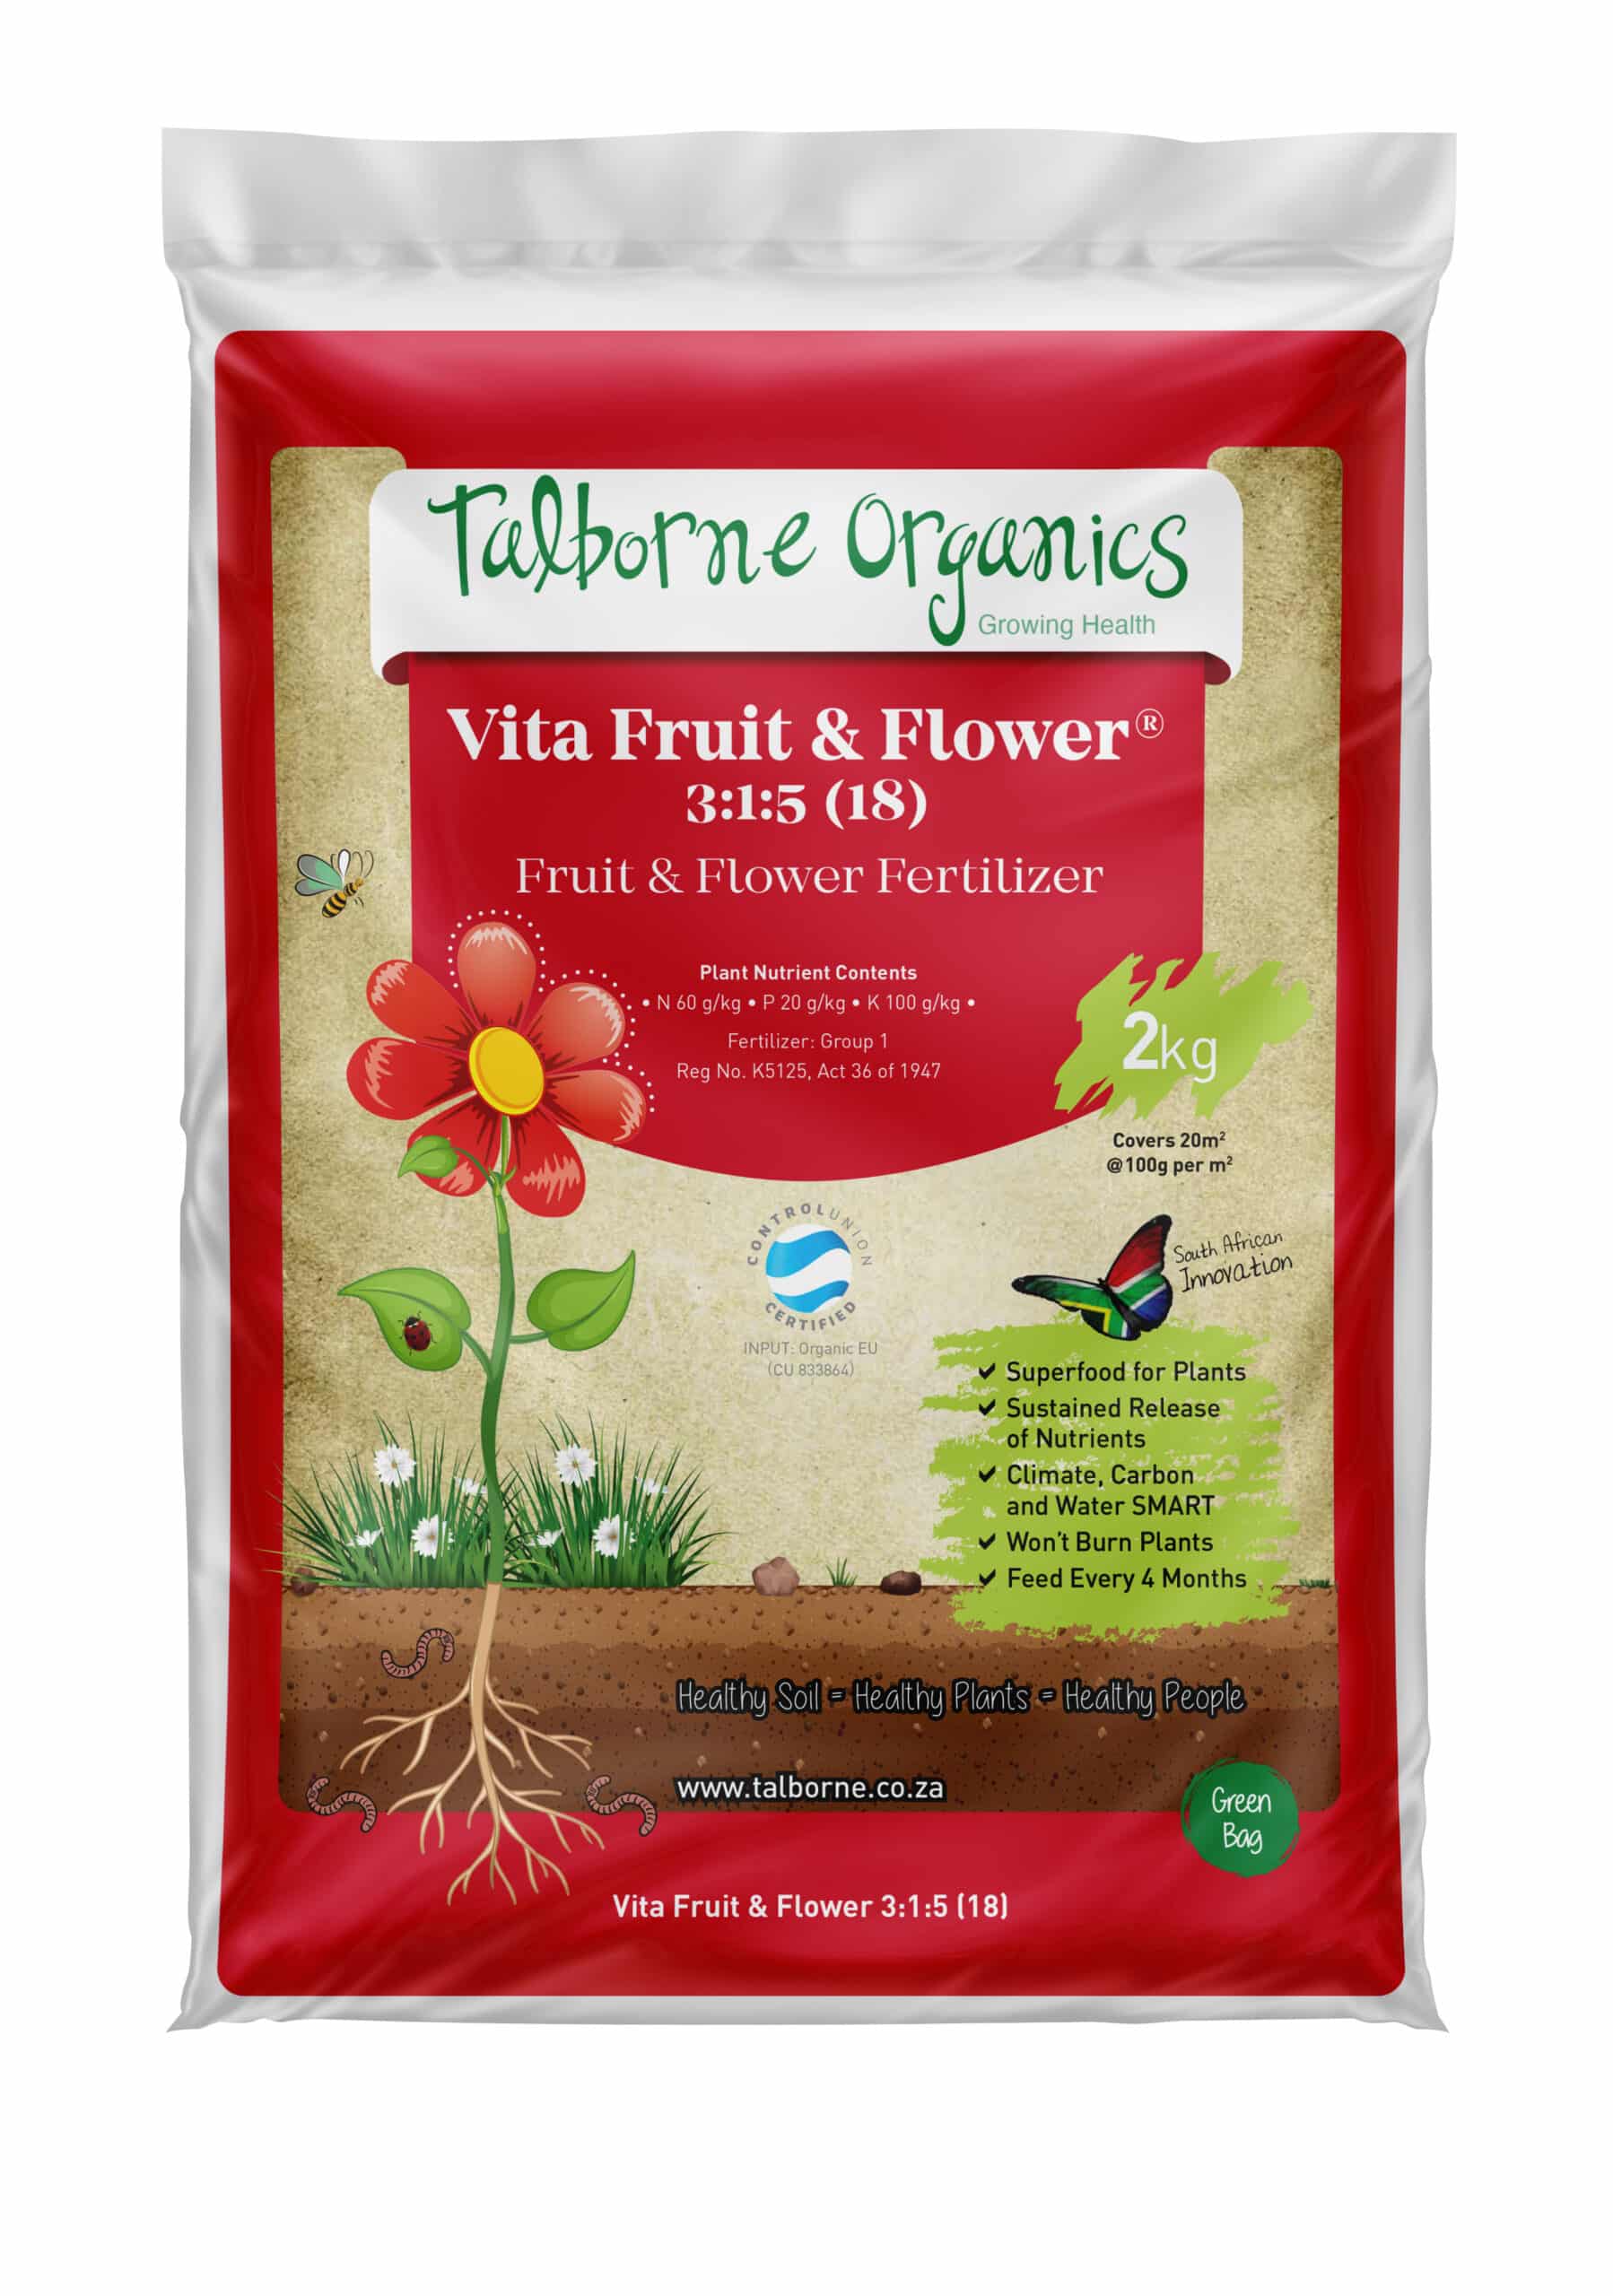 Red 2kg bag of Talborne Organics Vita Fruit & Flower 3:1:5 (18) Fruit & Flower Fertiliser with image of flowering plant.